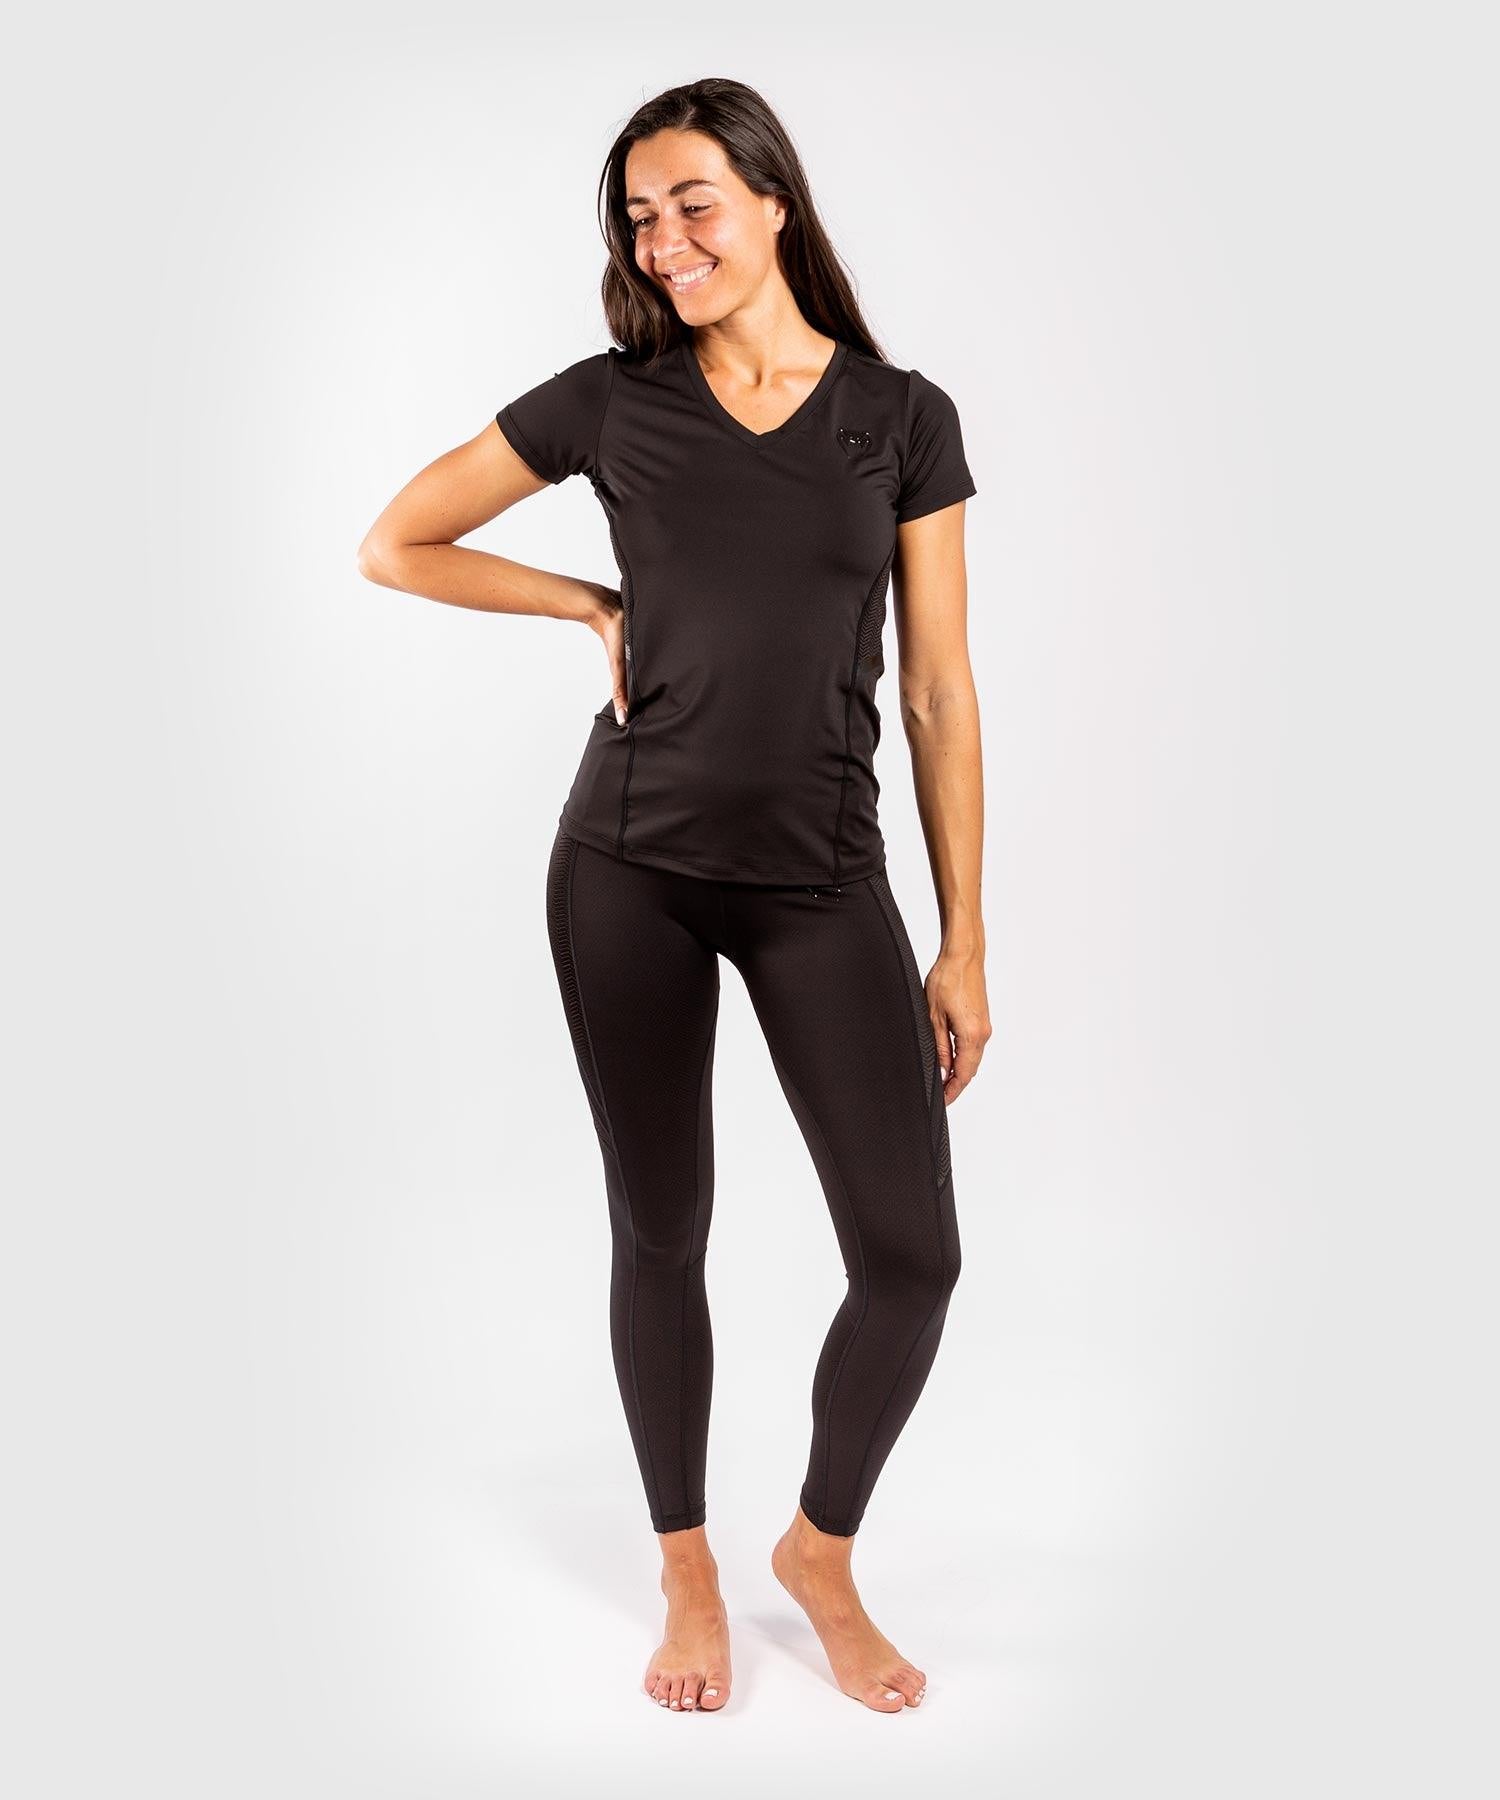 Venum G-Fit Dry-Tech T-shirt - For Women - Black/Black - Venum